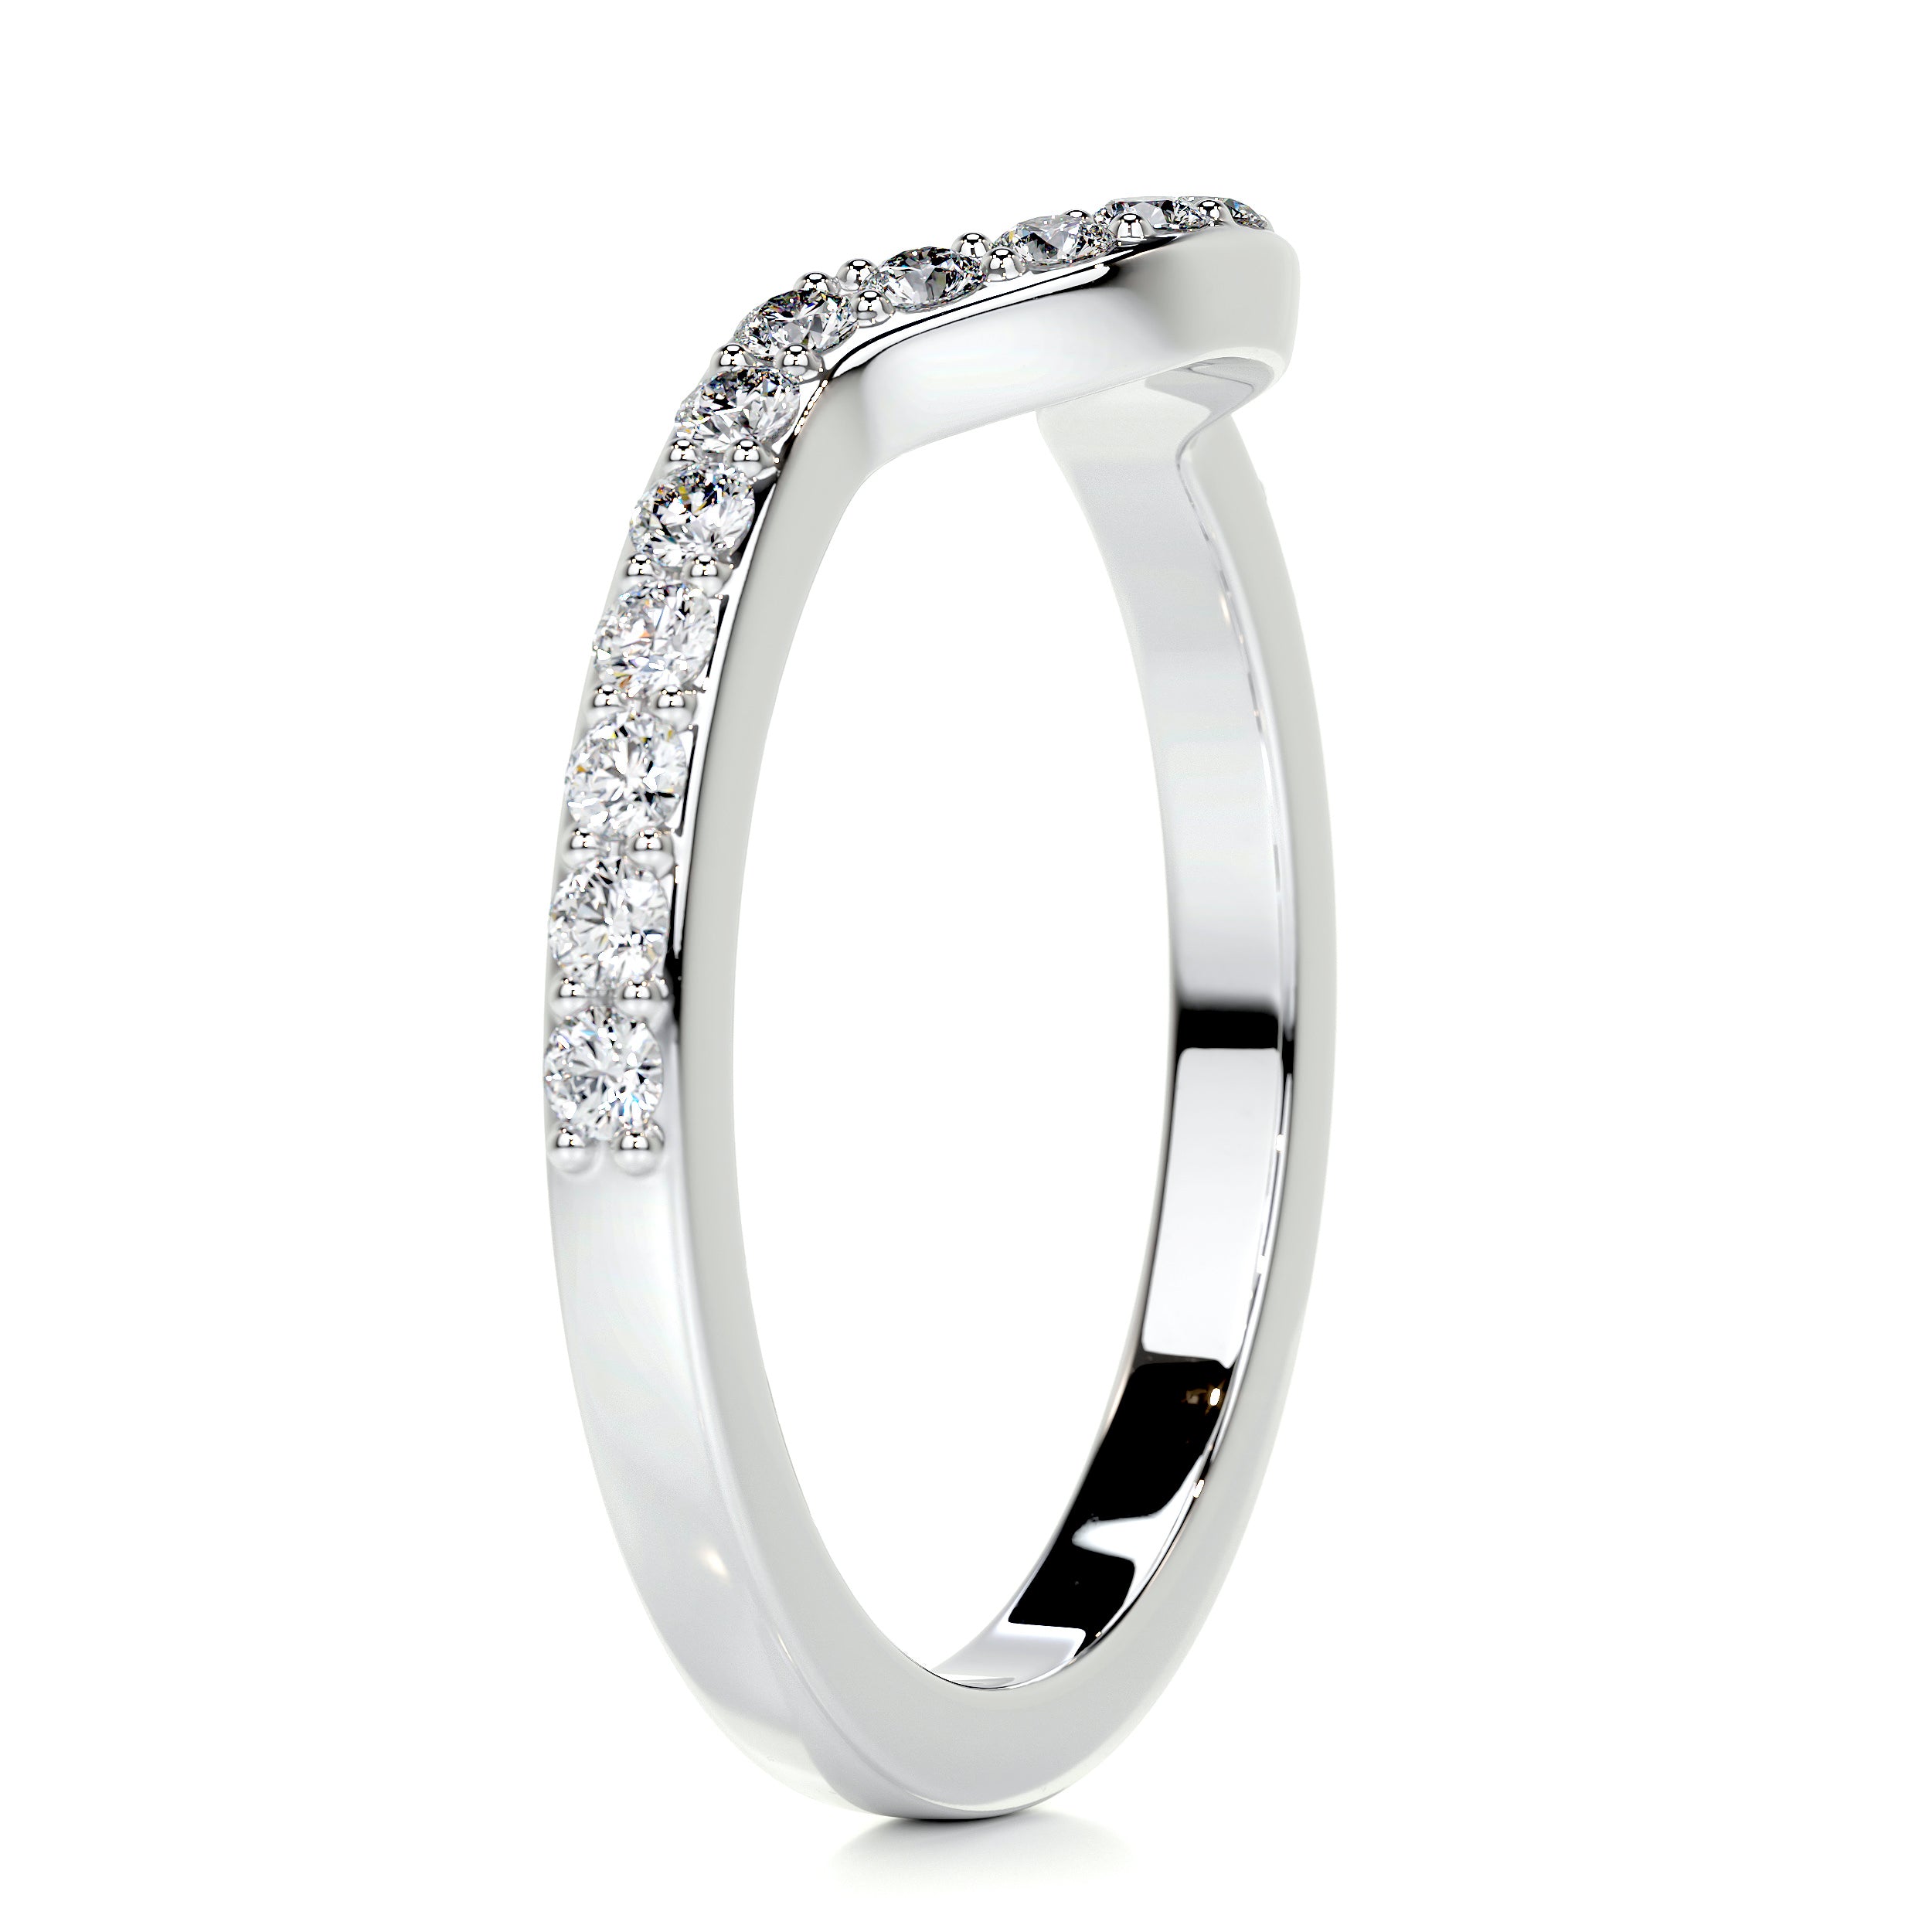 Nina Diamond Wedding Ring   (0.2 Carat) -18K White Gold